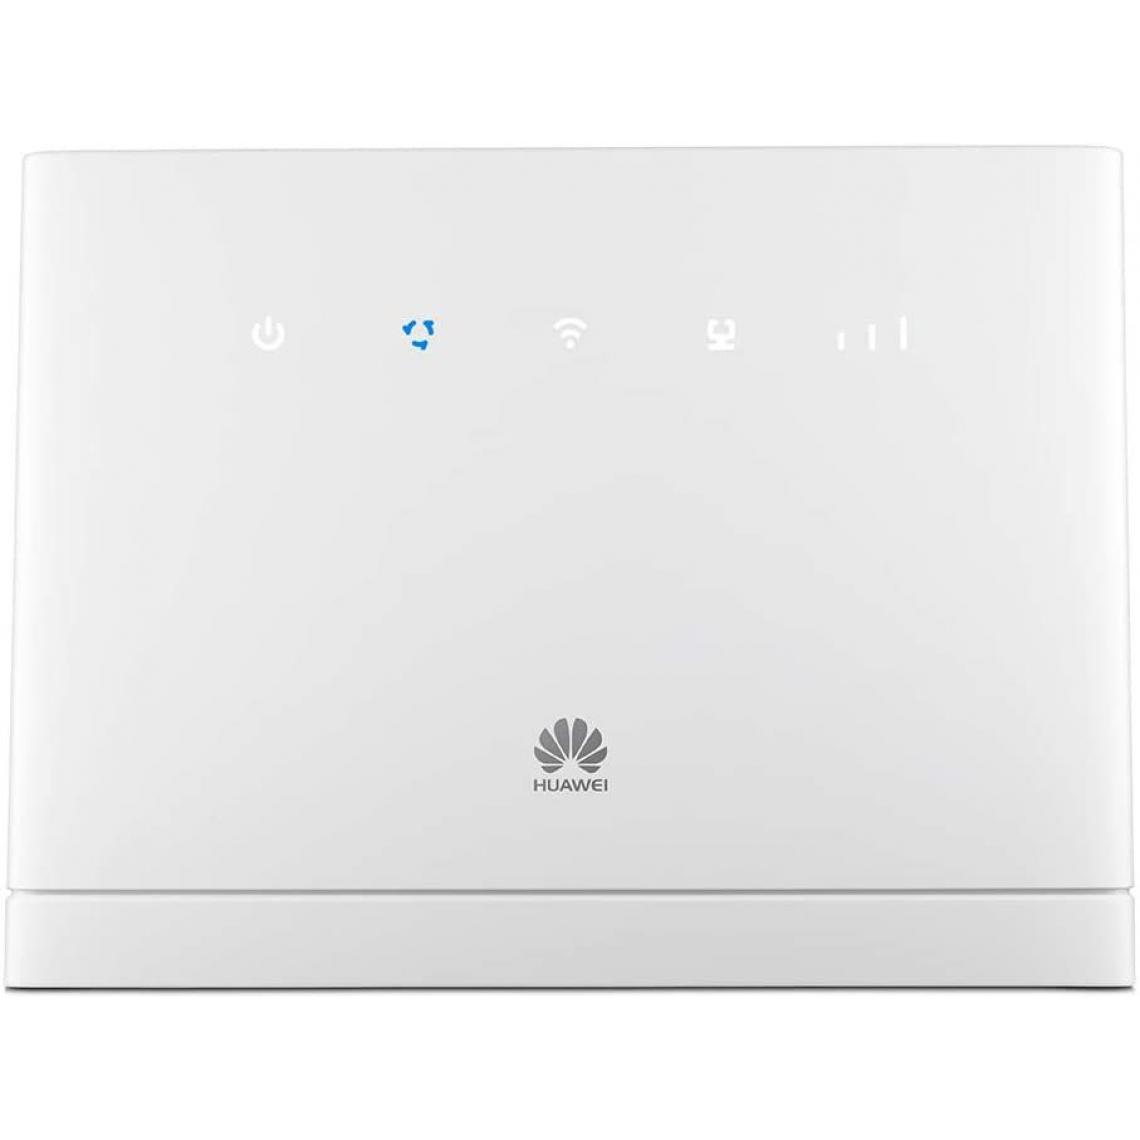 Chrono - Huawei B315s-22 4G LTE/WiFi blanc Gigabit - 2xSMA pour antenne externeï¼Blanc - Modem / Routeur / Points d'accès